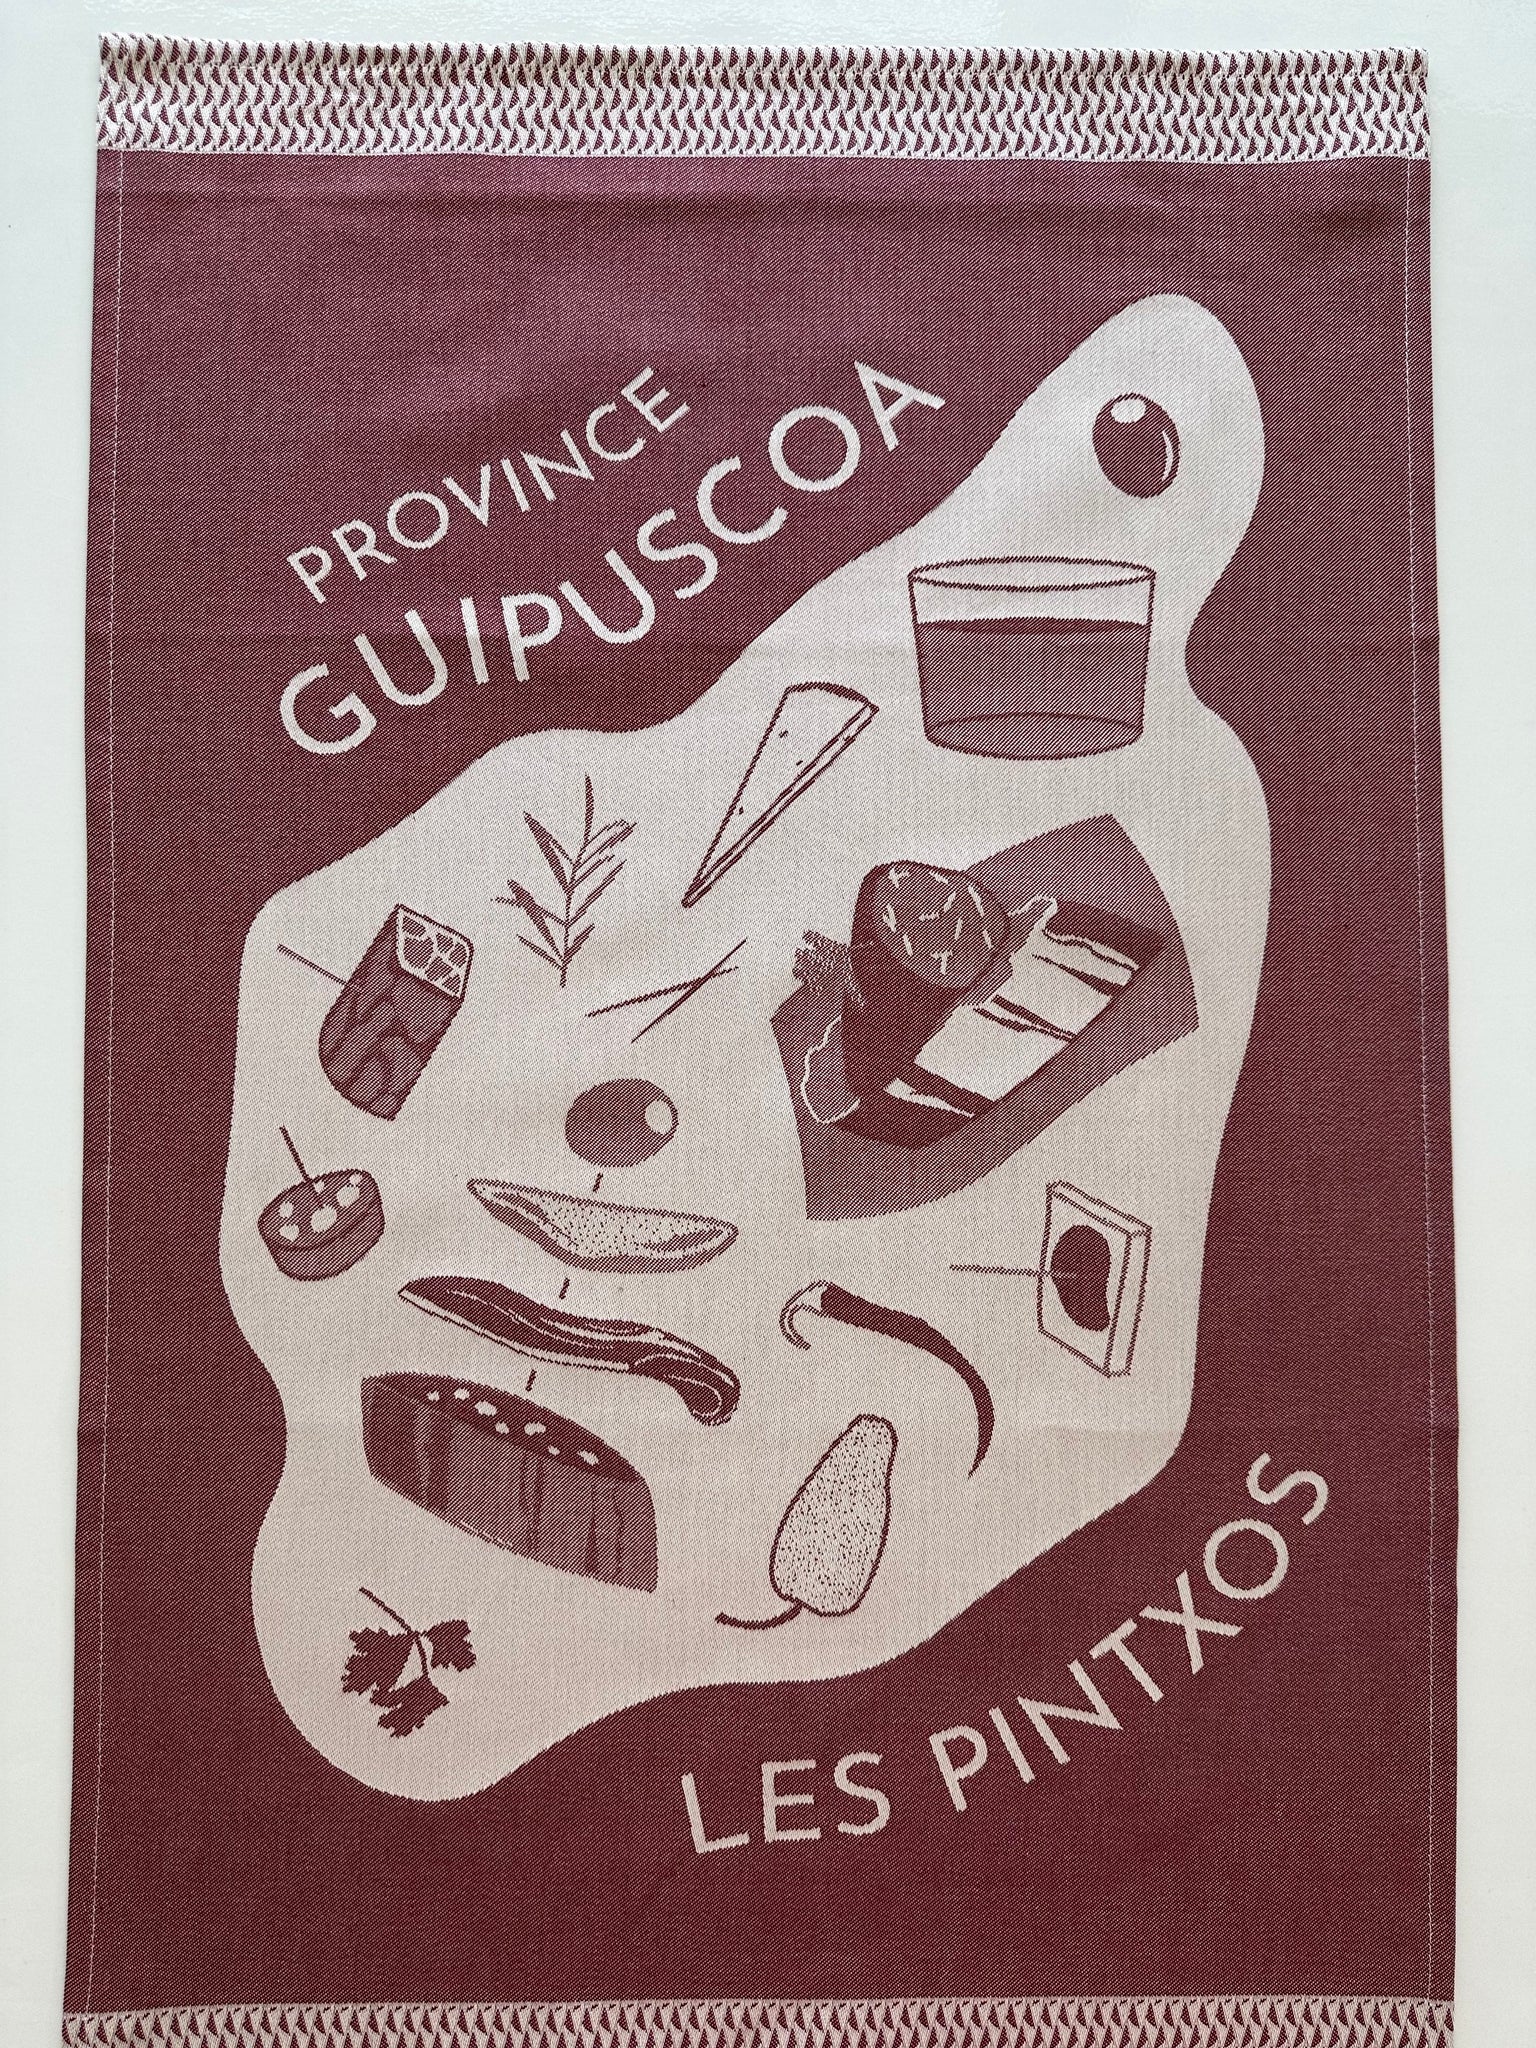 French Jacquard tea towel by Jean-Vier, "Pintxos"